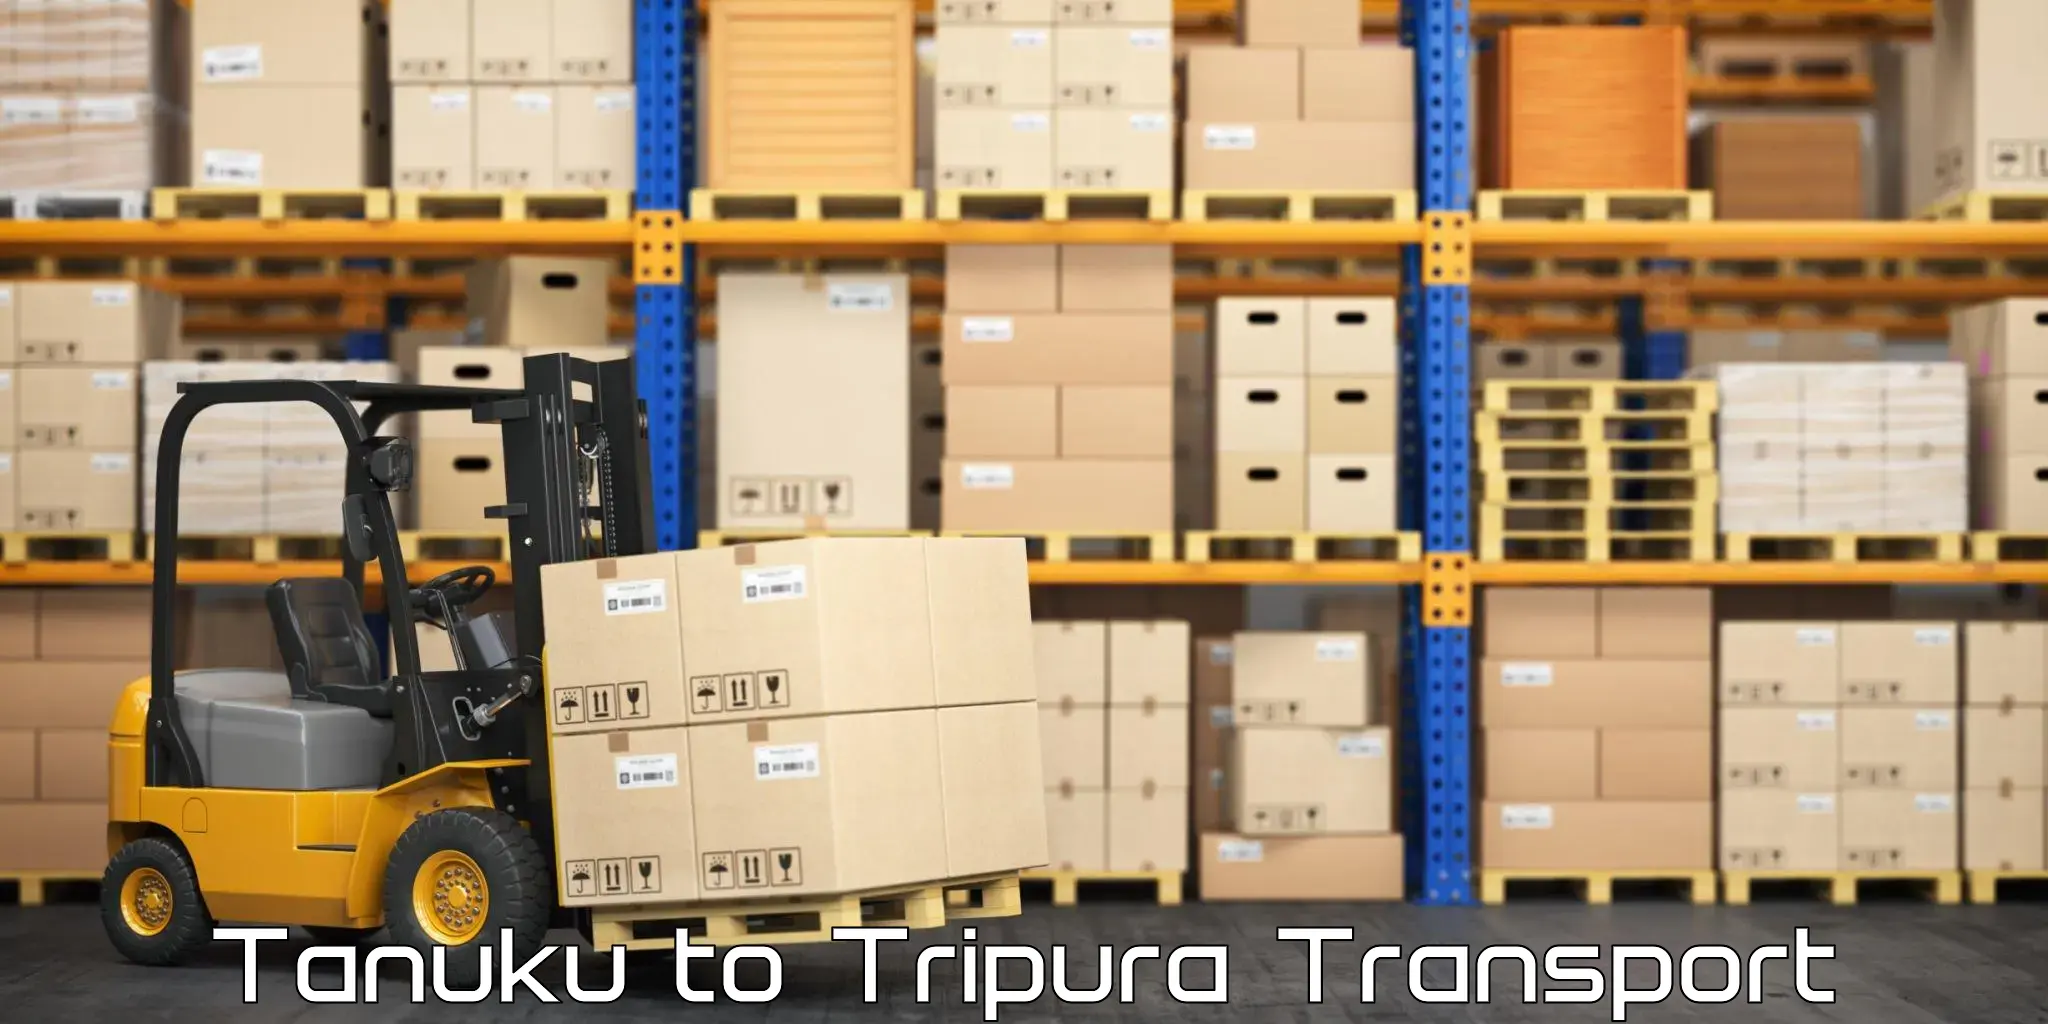 Transport in sharing Tanuku to NIT Agartala